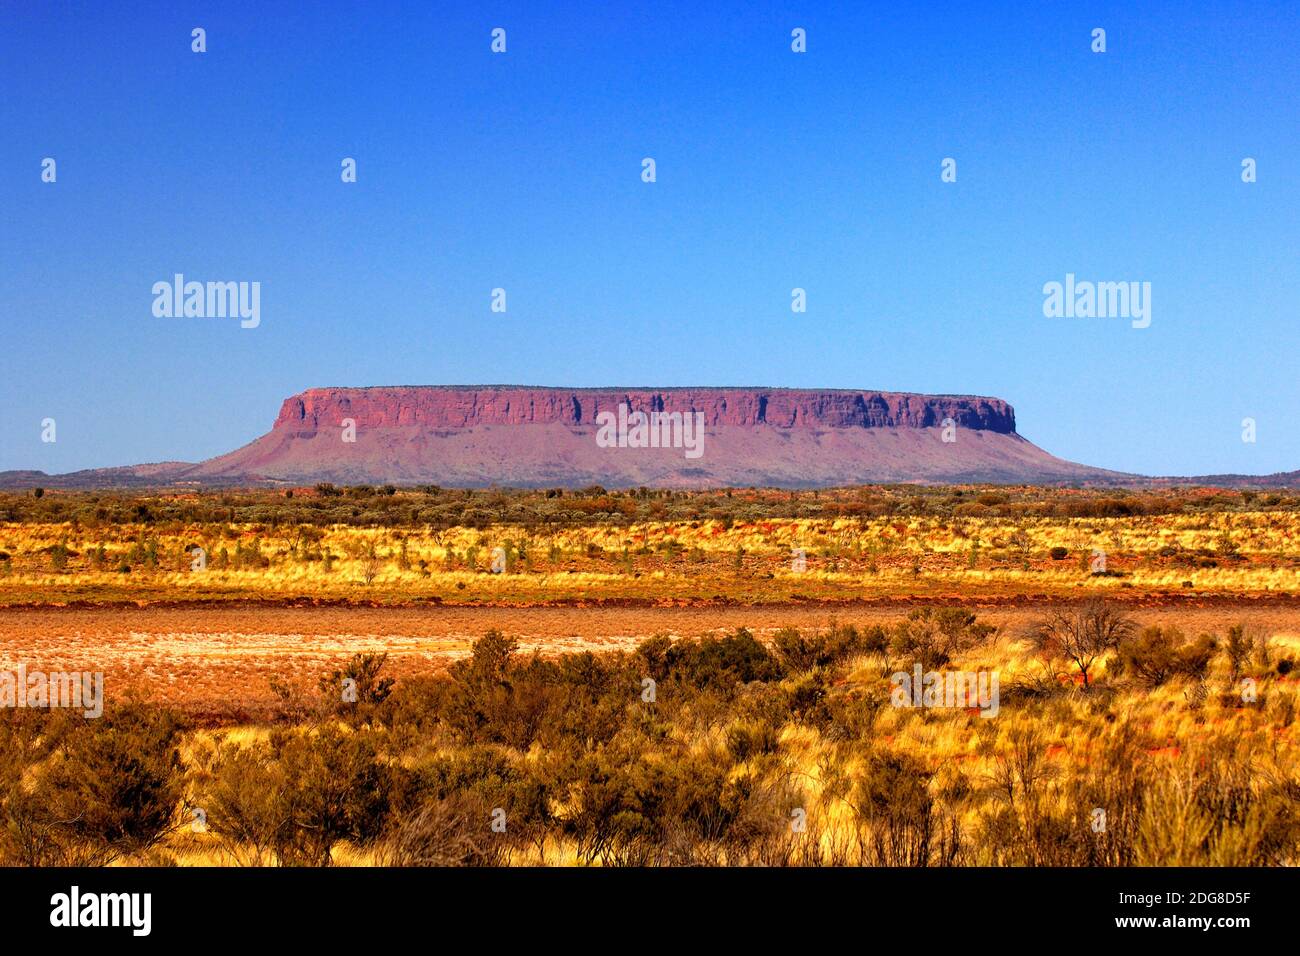 Ayers Rock - Australien Foto Stock